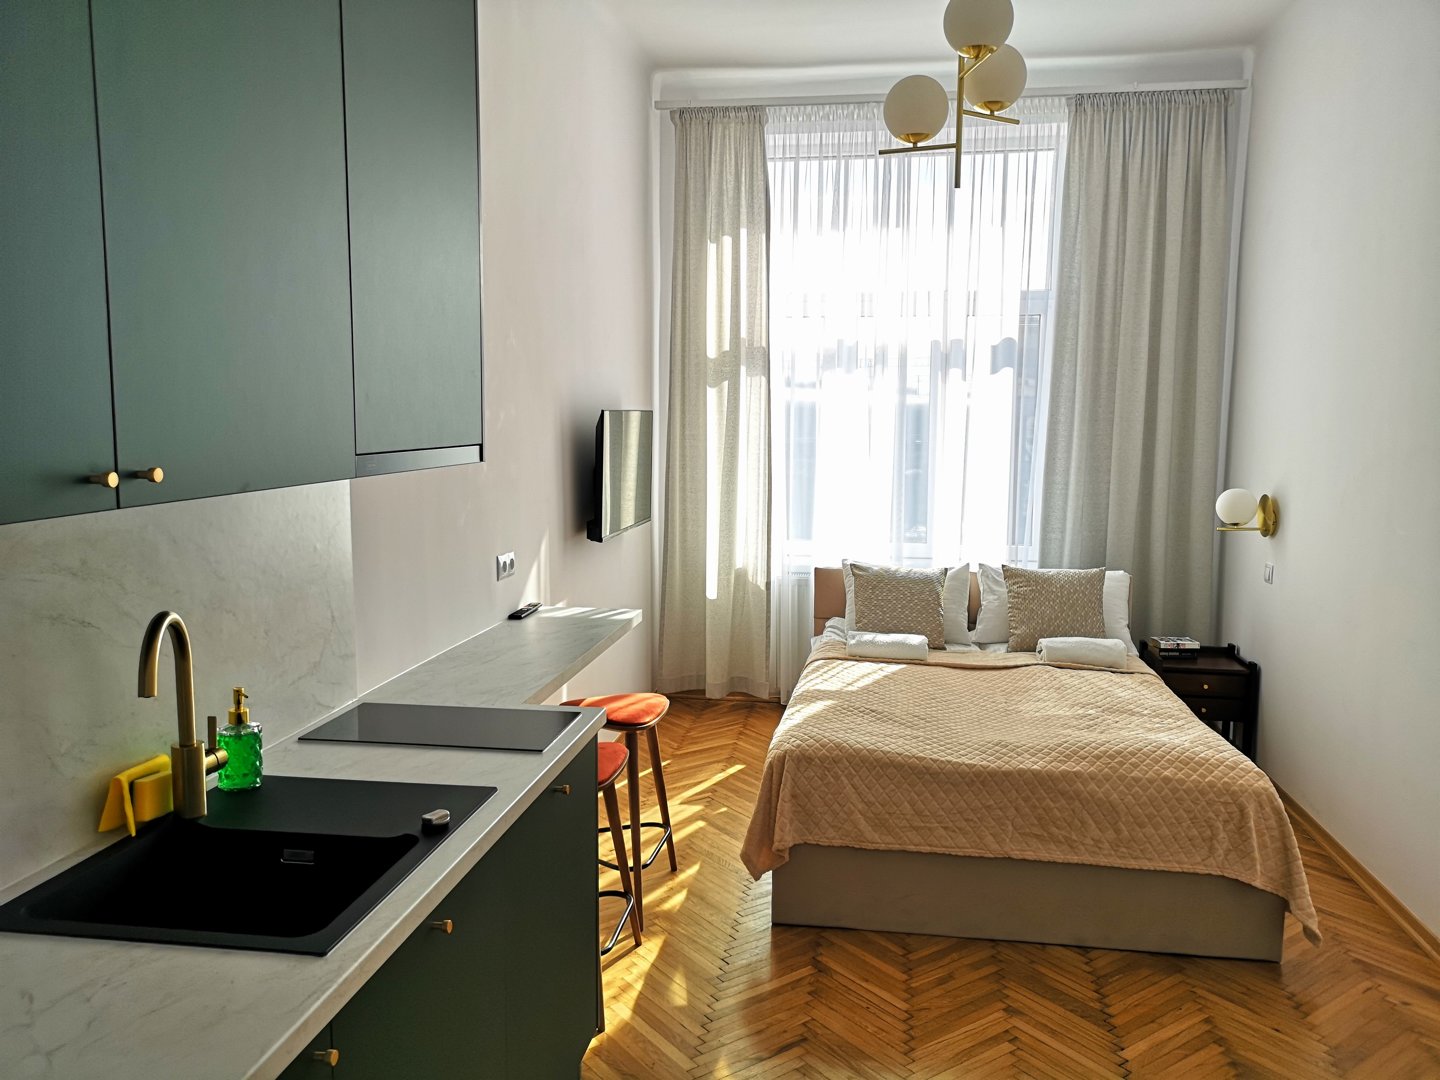 HOMELIKE KRAKOW APARTMENTS Unique Style Apartments # 8C